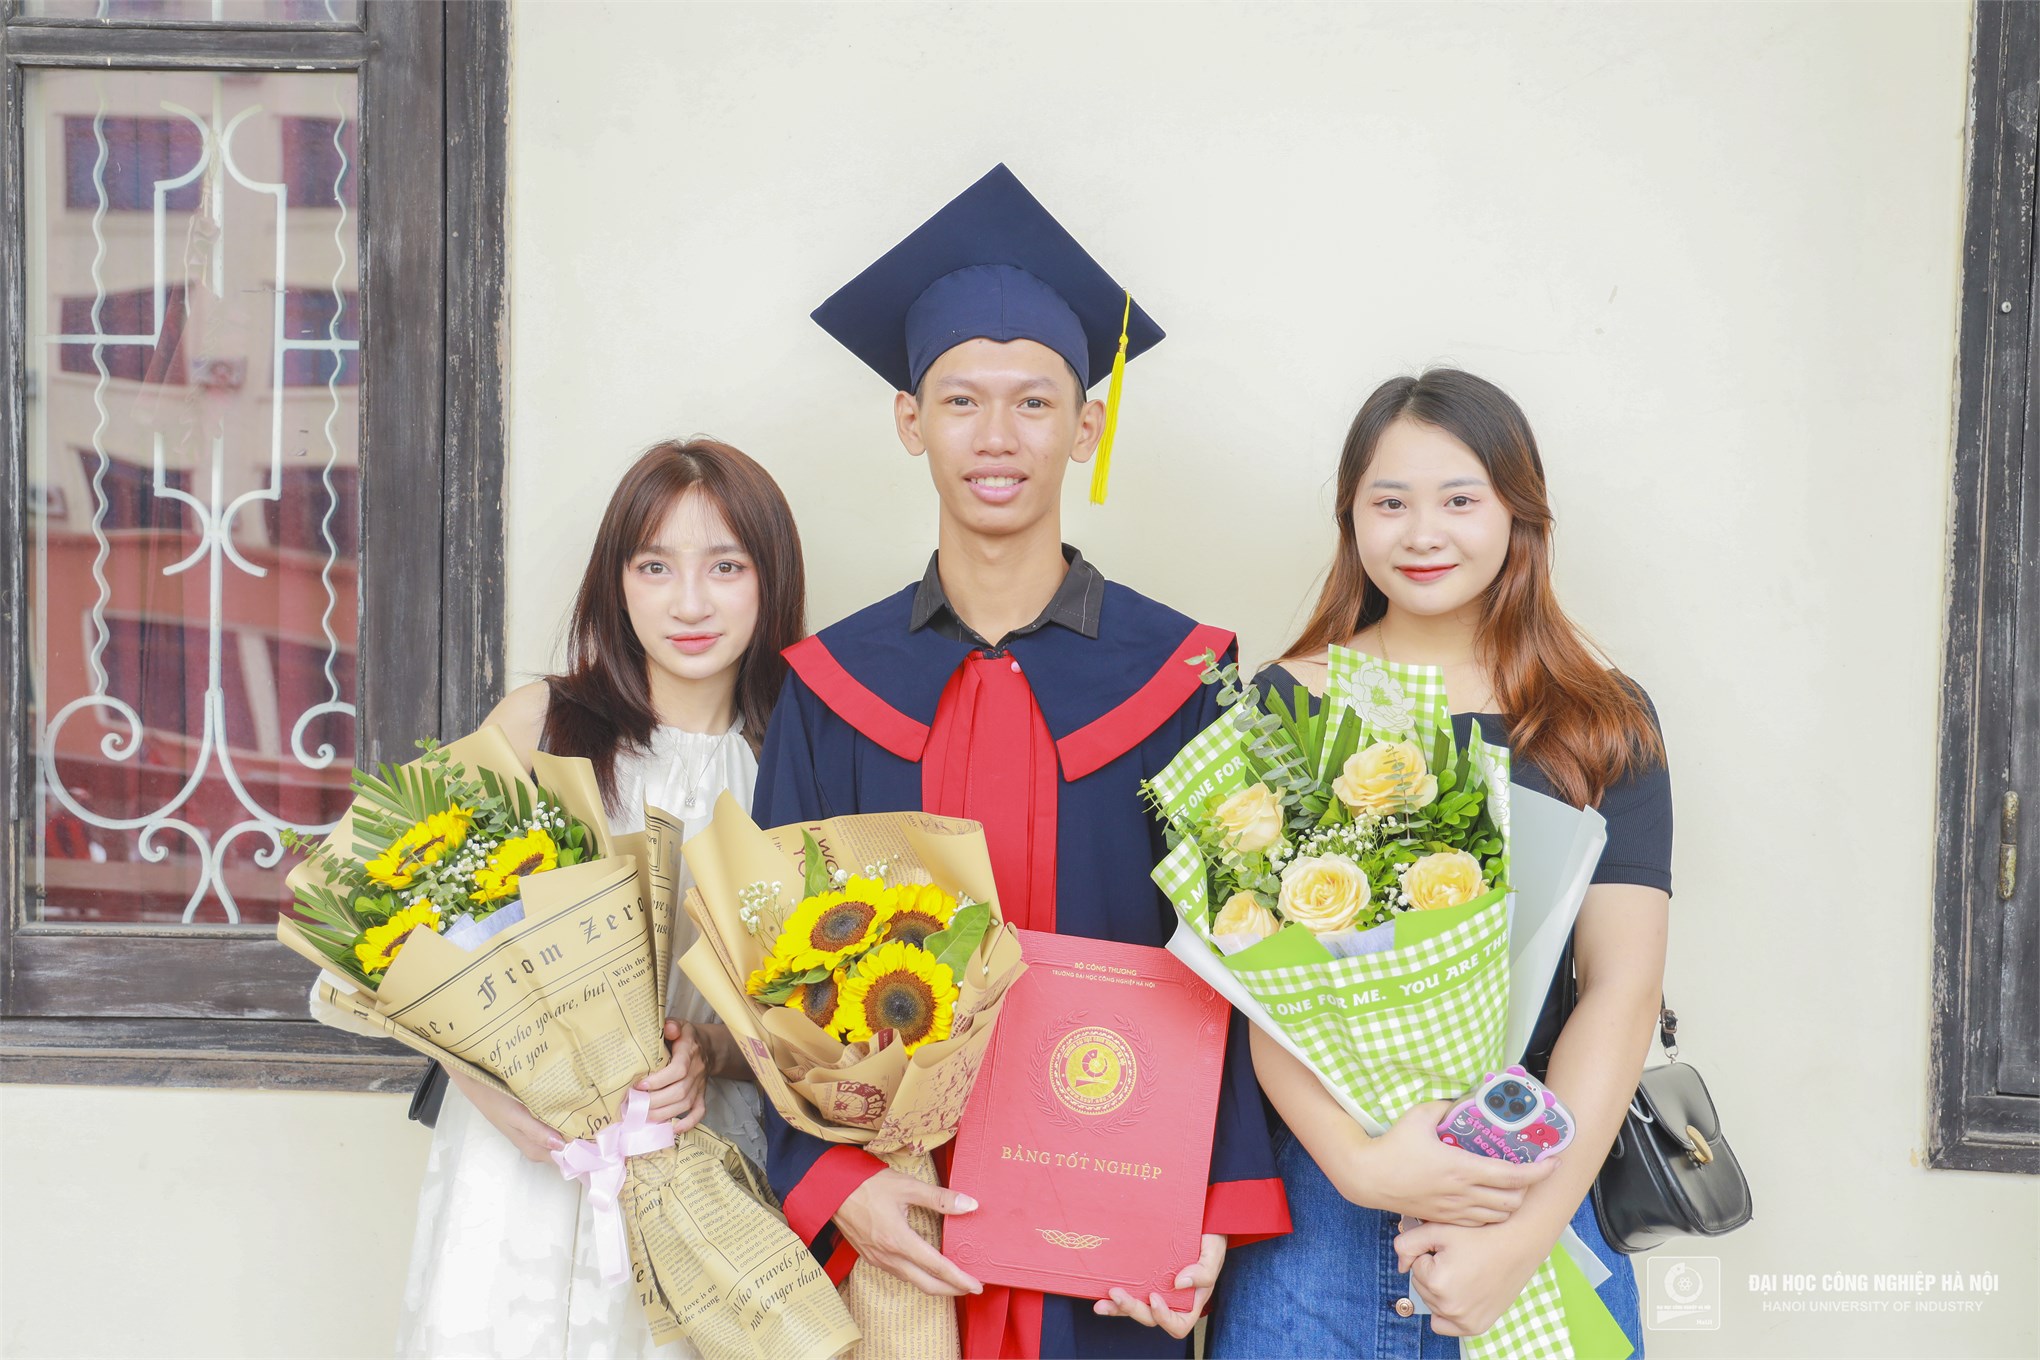 Dư âm ngọt ngào tại lễ tốt nghiệp của hơn 460 sinh viên hệ cao đẳng K22 trung tâm Việt - Nhật